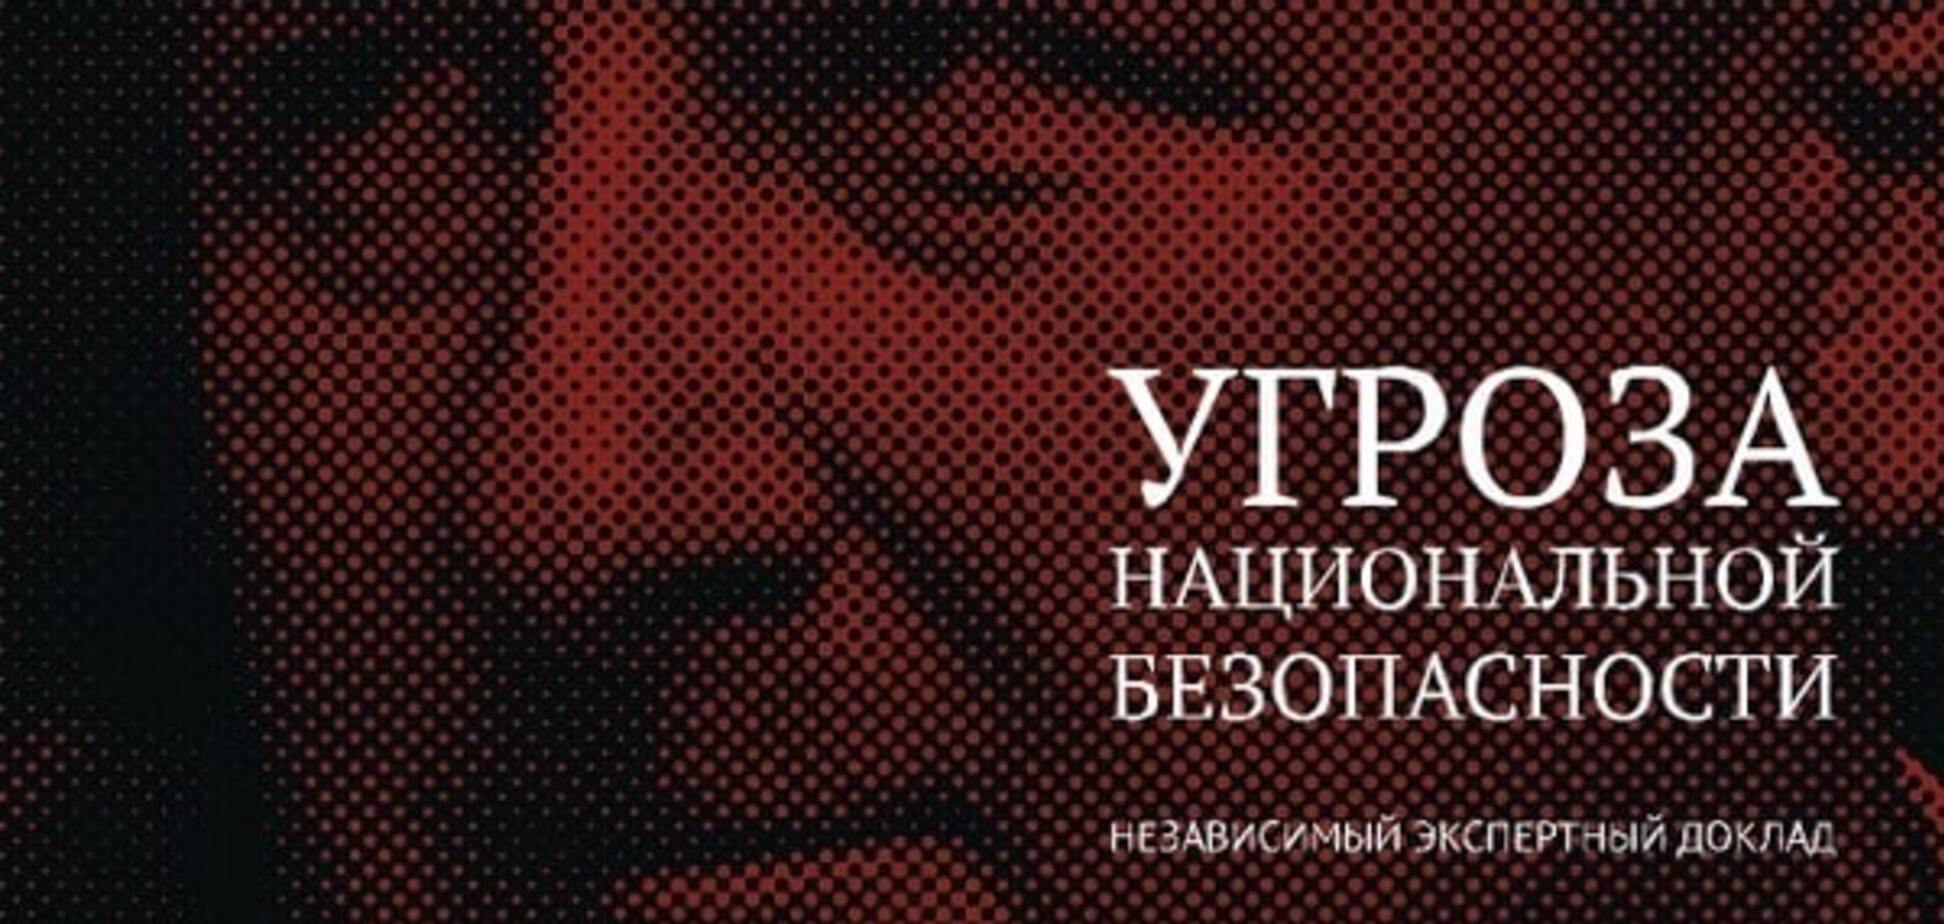 Загроза національній безпеці: опубліковано повний текст доповіді Яшина про Кадирова. Документ